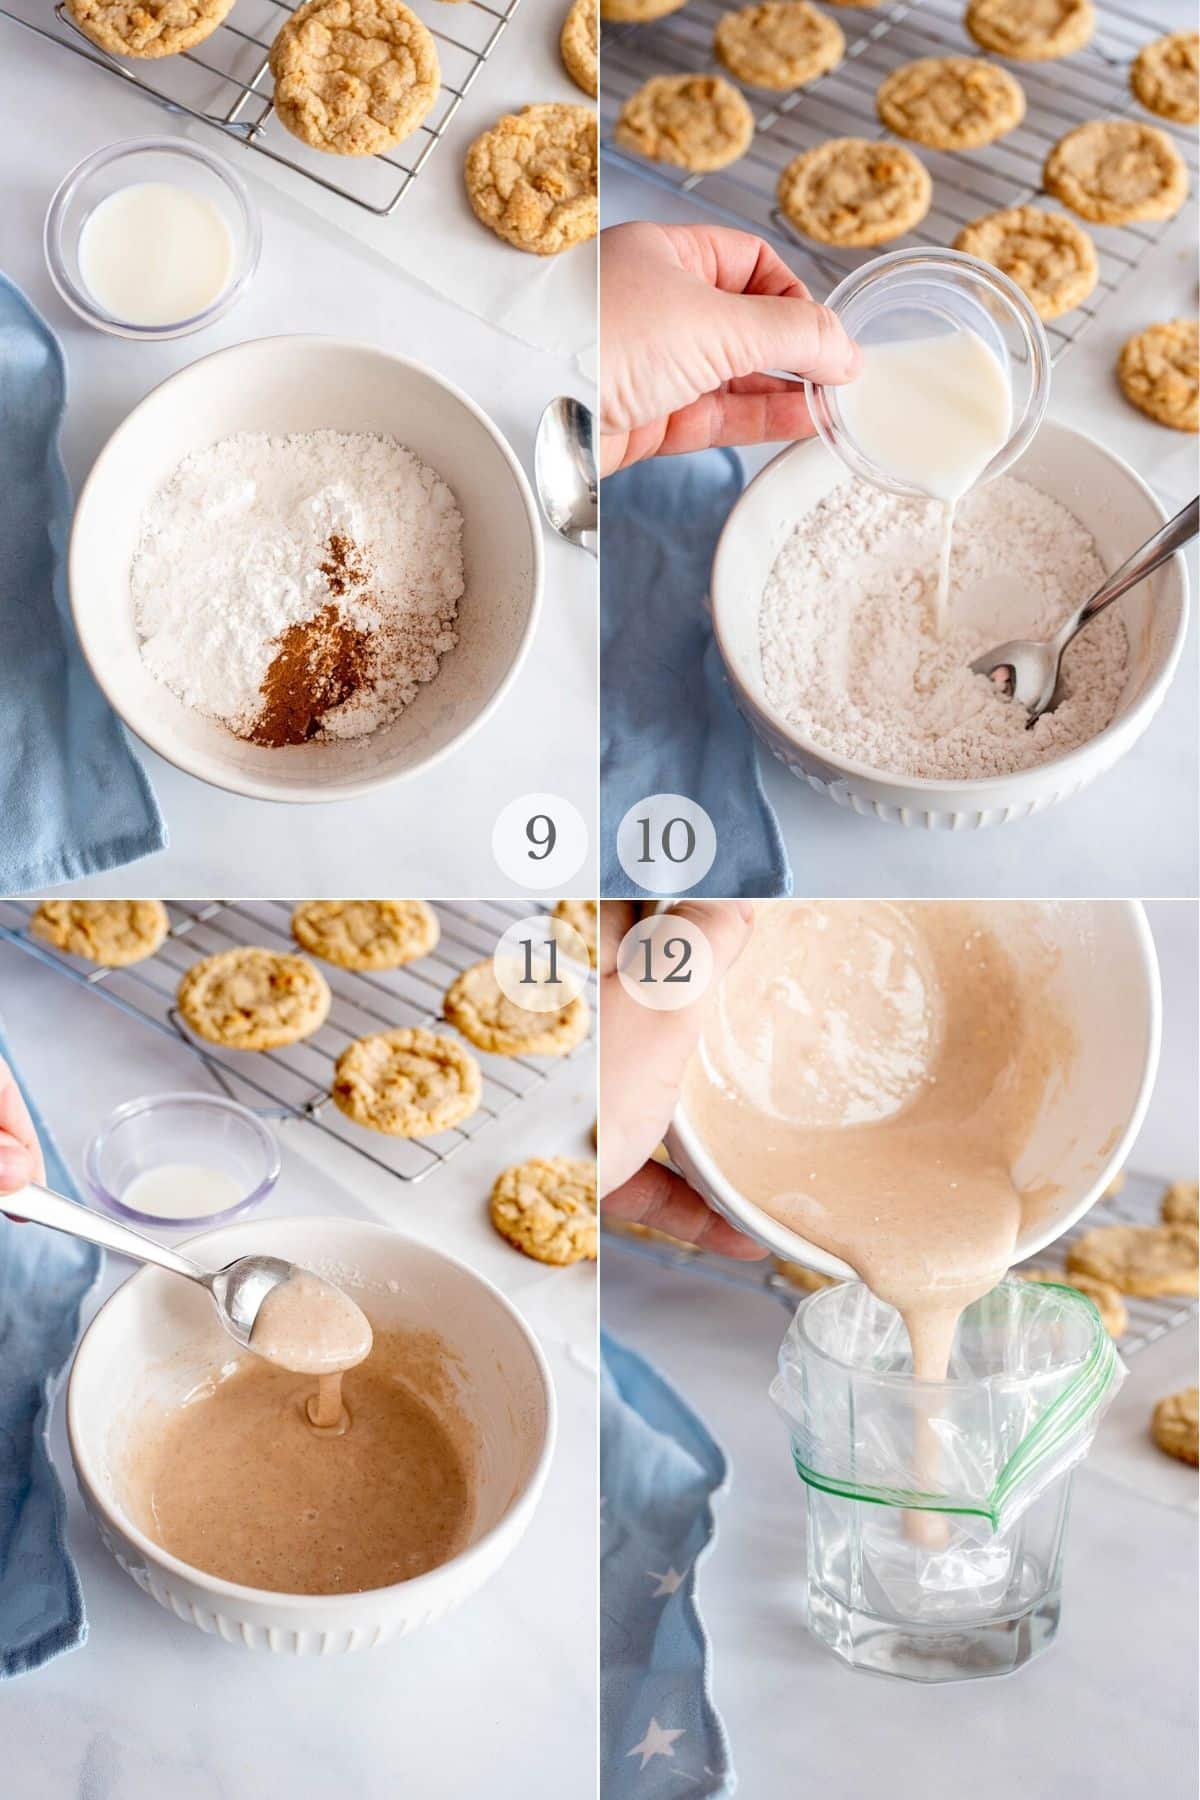 cinnamon toast crunch cookies recipe steps 9-12.